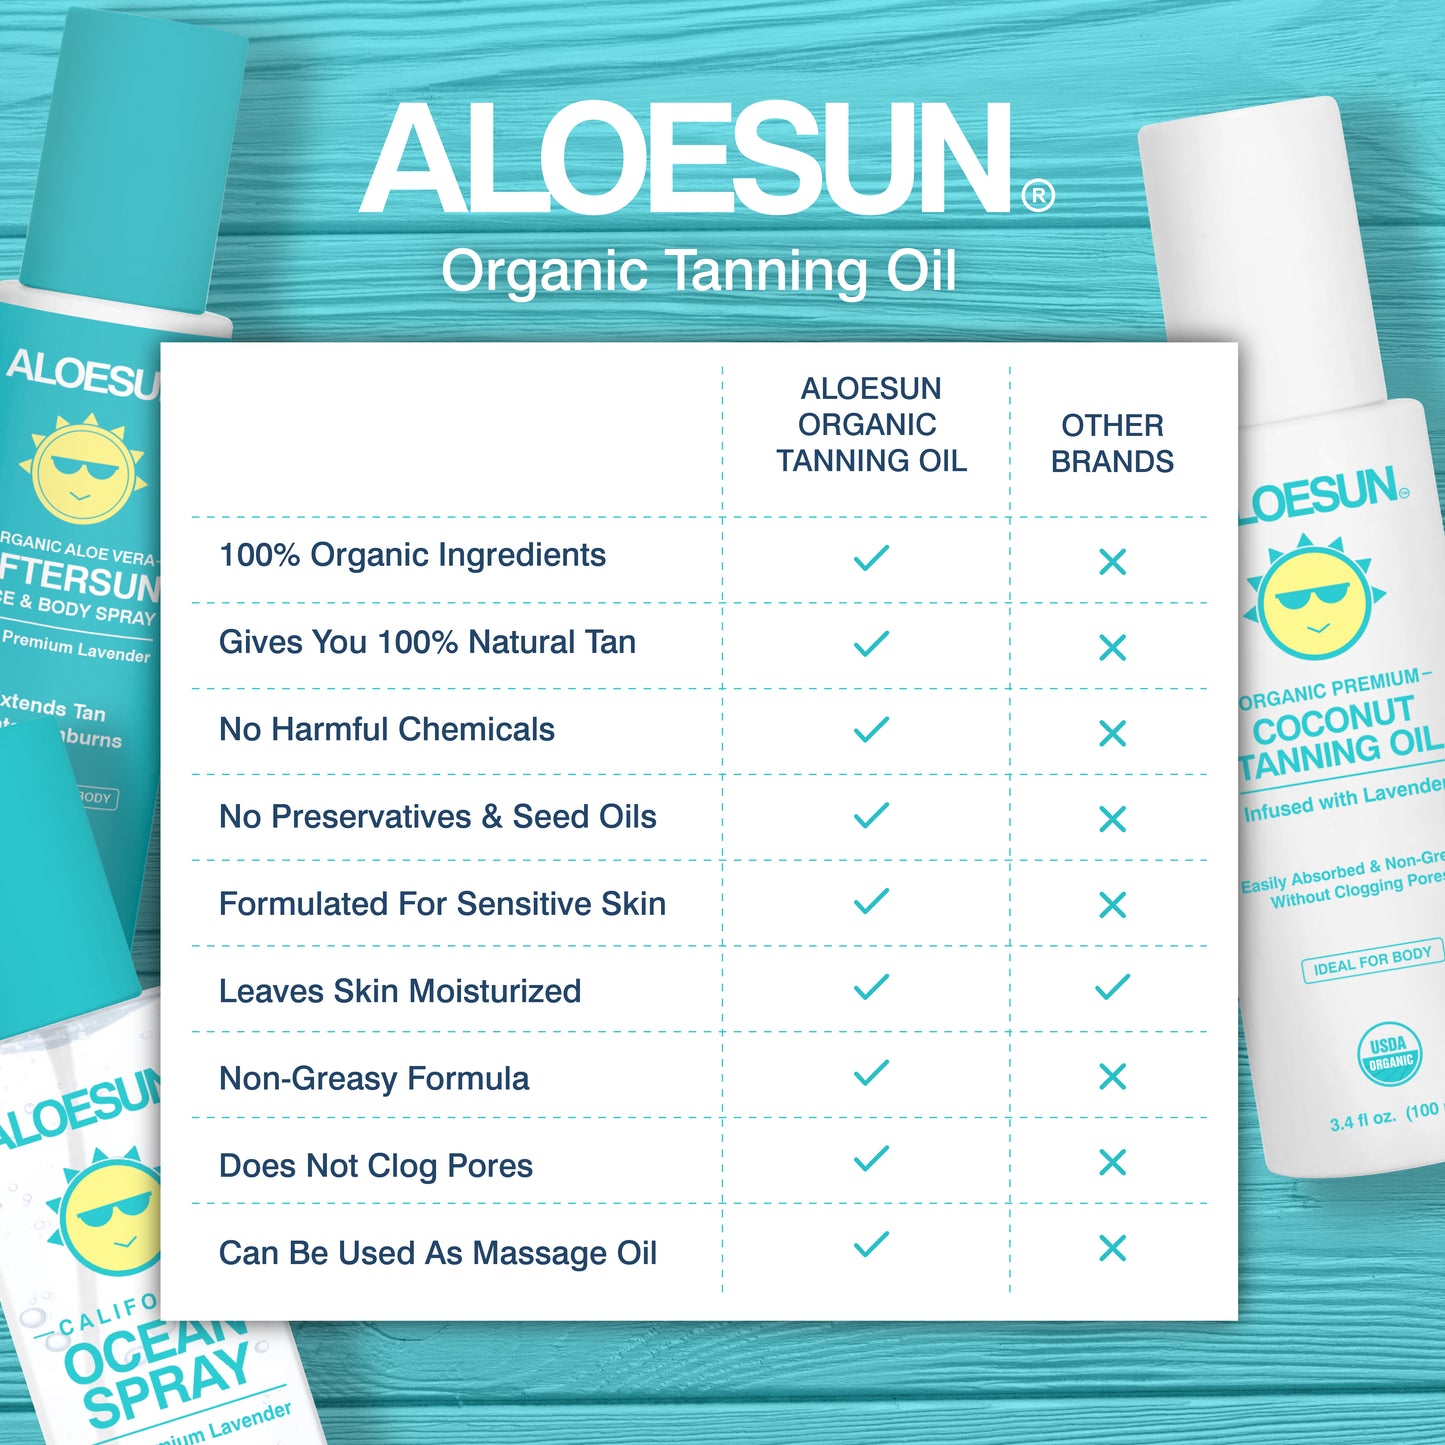 ALOESUN Organic Tanning Oil